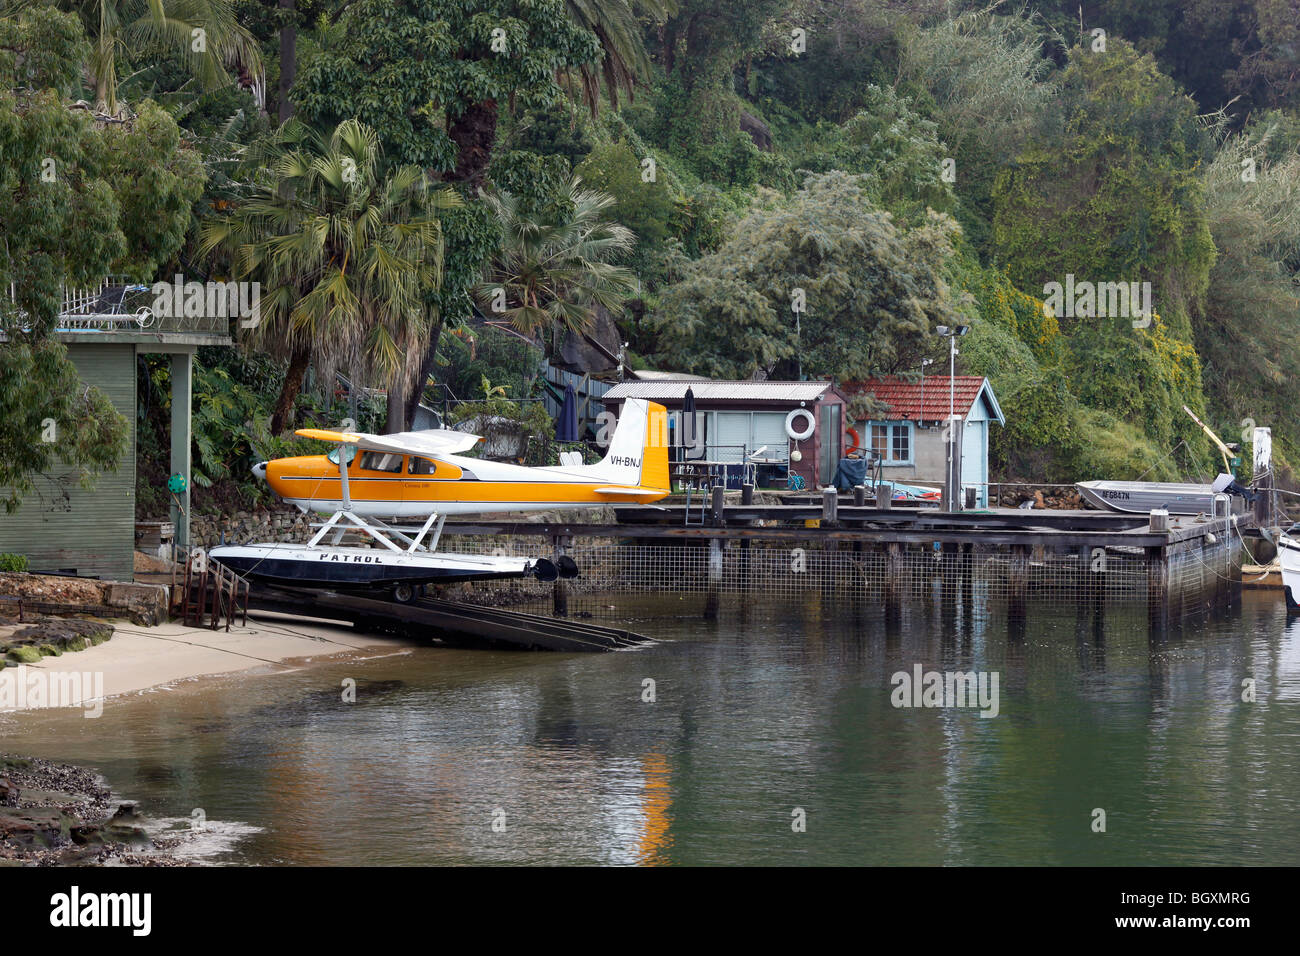 Sehr friedliche Szene der Wharf mit dem Wasserflugzeug Stockfoto